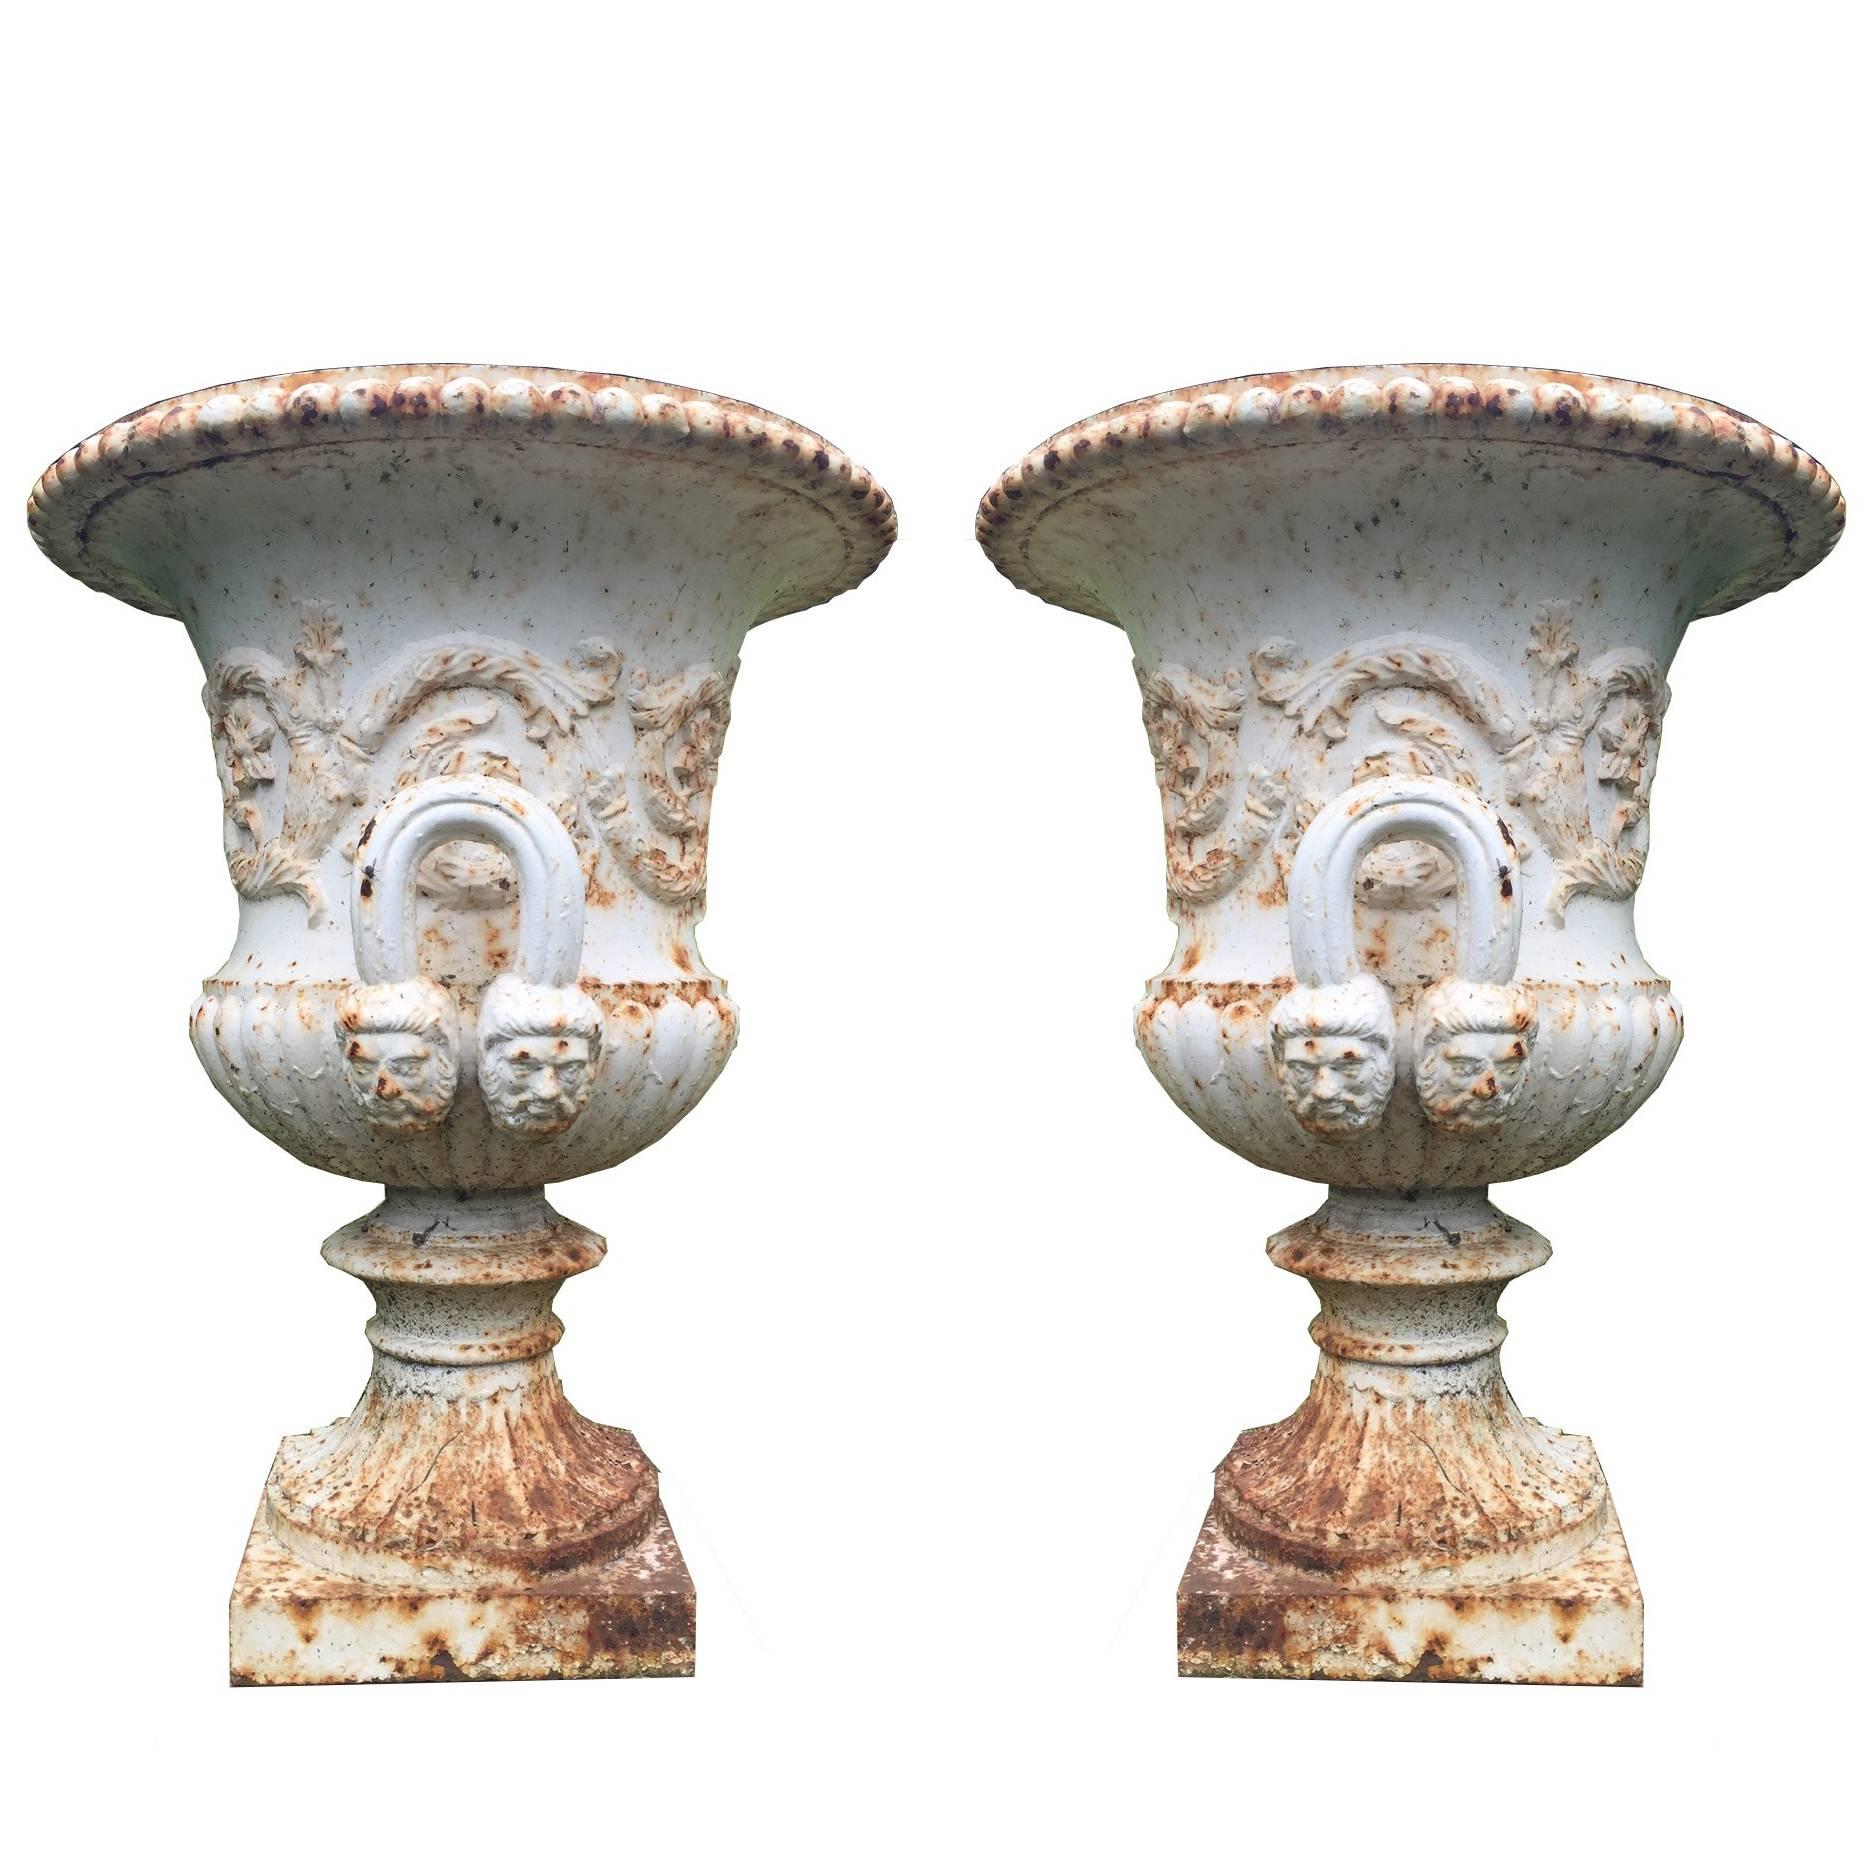 19th century pair of antique cast iron urn.